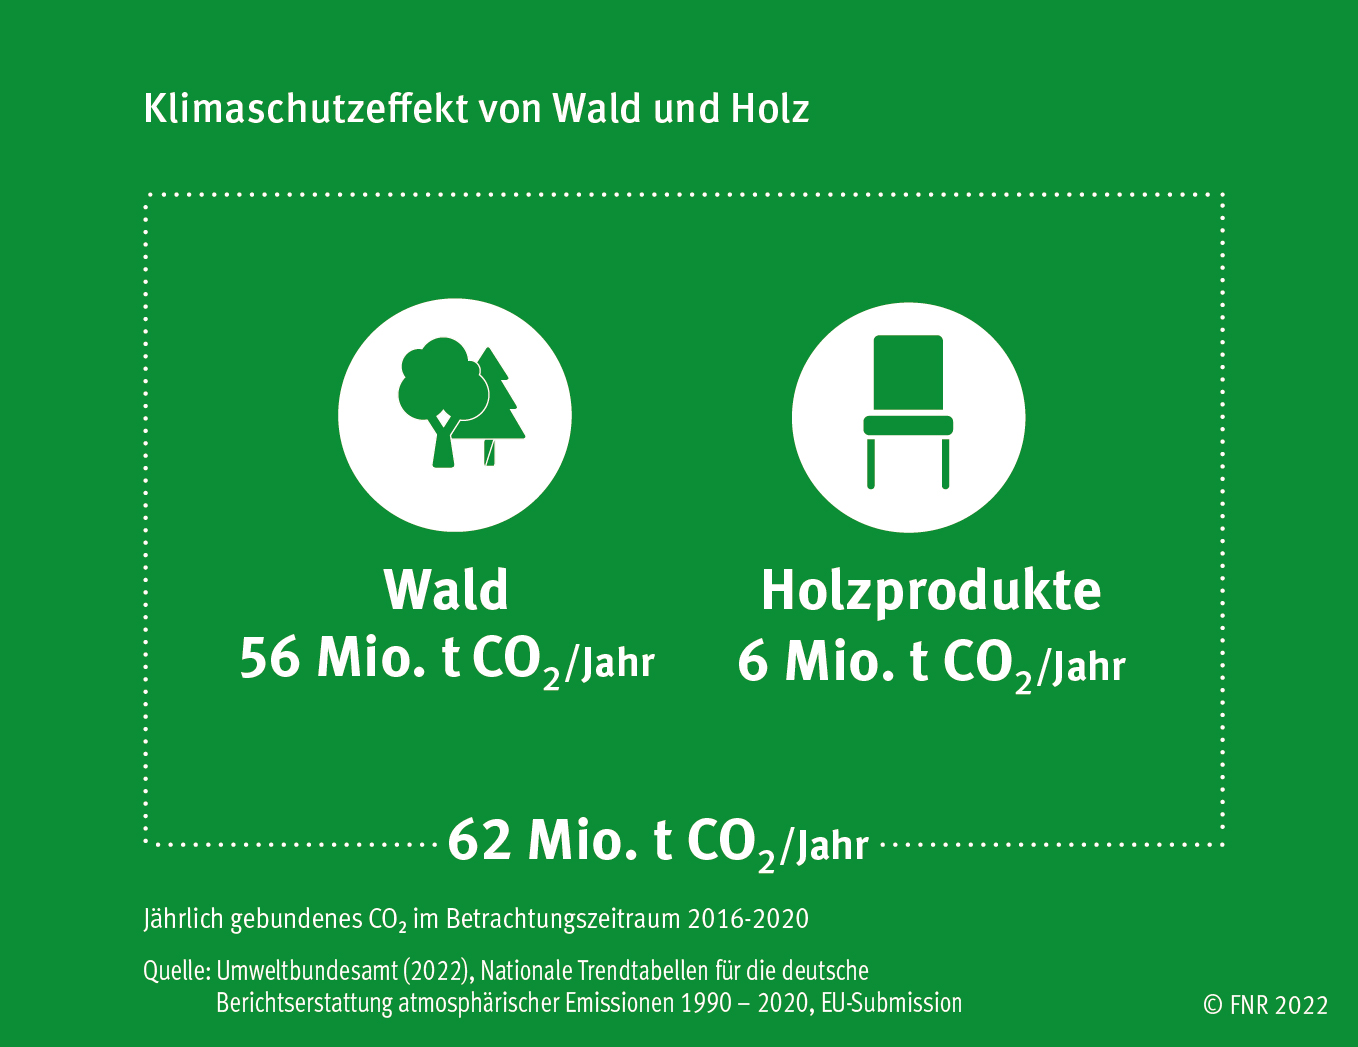 62 Mio. Tonnen Kohlendioxid (CO2) werden durch Wald und Holz in Deutschland jährlich gespeichert. Davon 56 Mio. Tonnen allein durch den Wald, 6 Mio. Tonnen durch die Holznutzung.